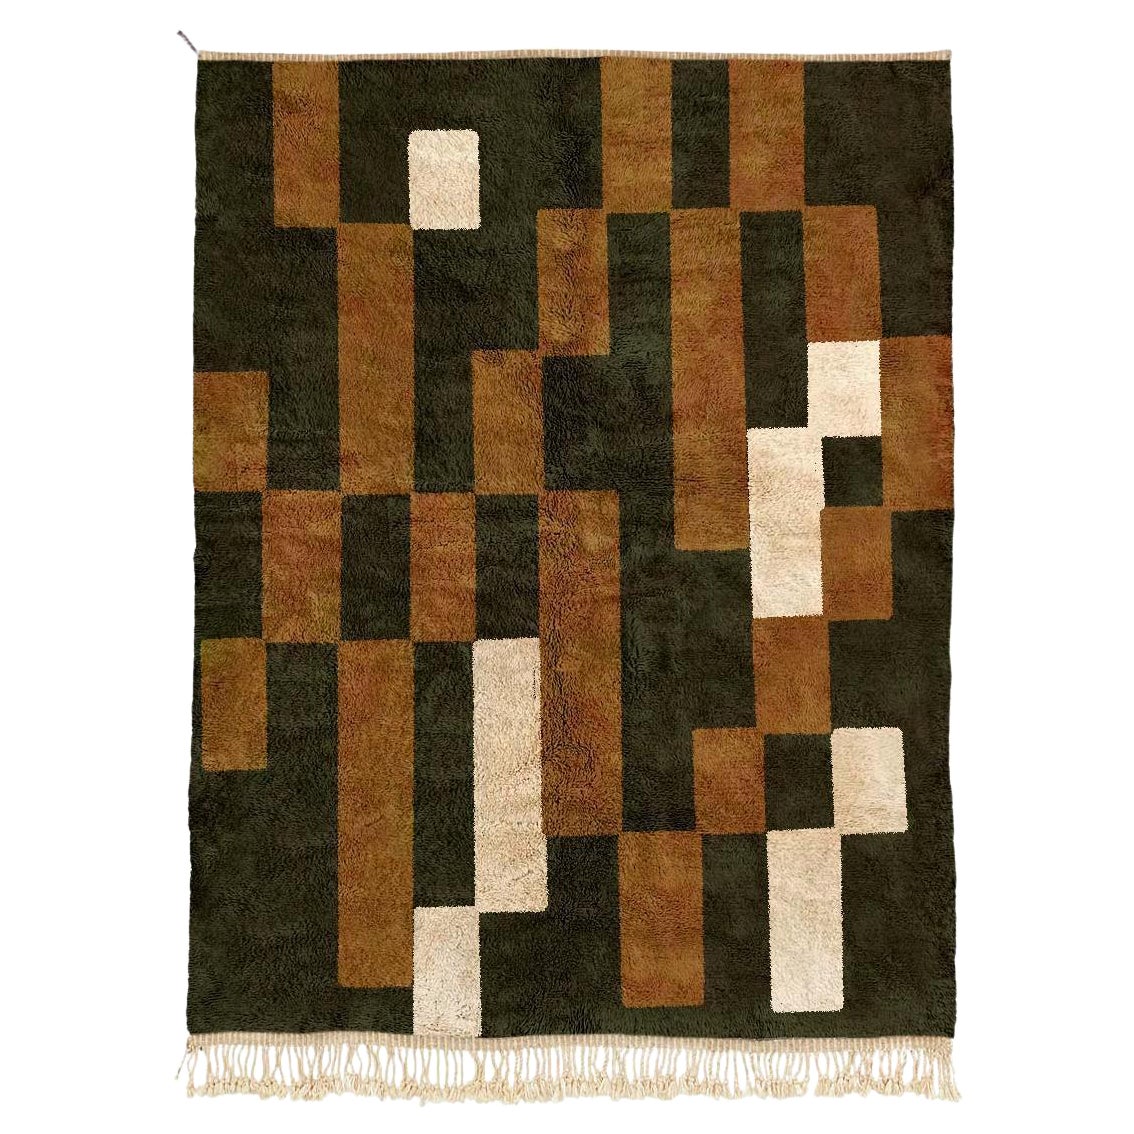 Tapis marocain Beni Mrirt 6'x9', tapis à motifs géométriques rectangulaires, fait sur mesure